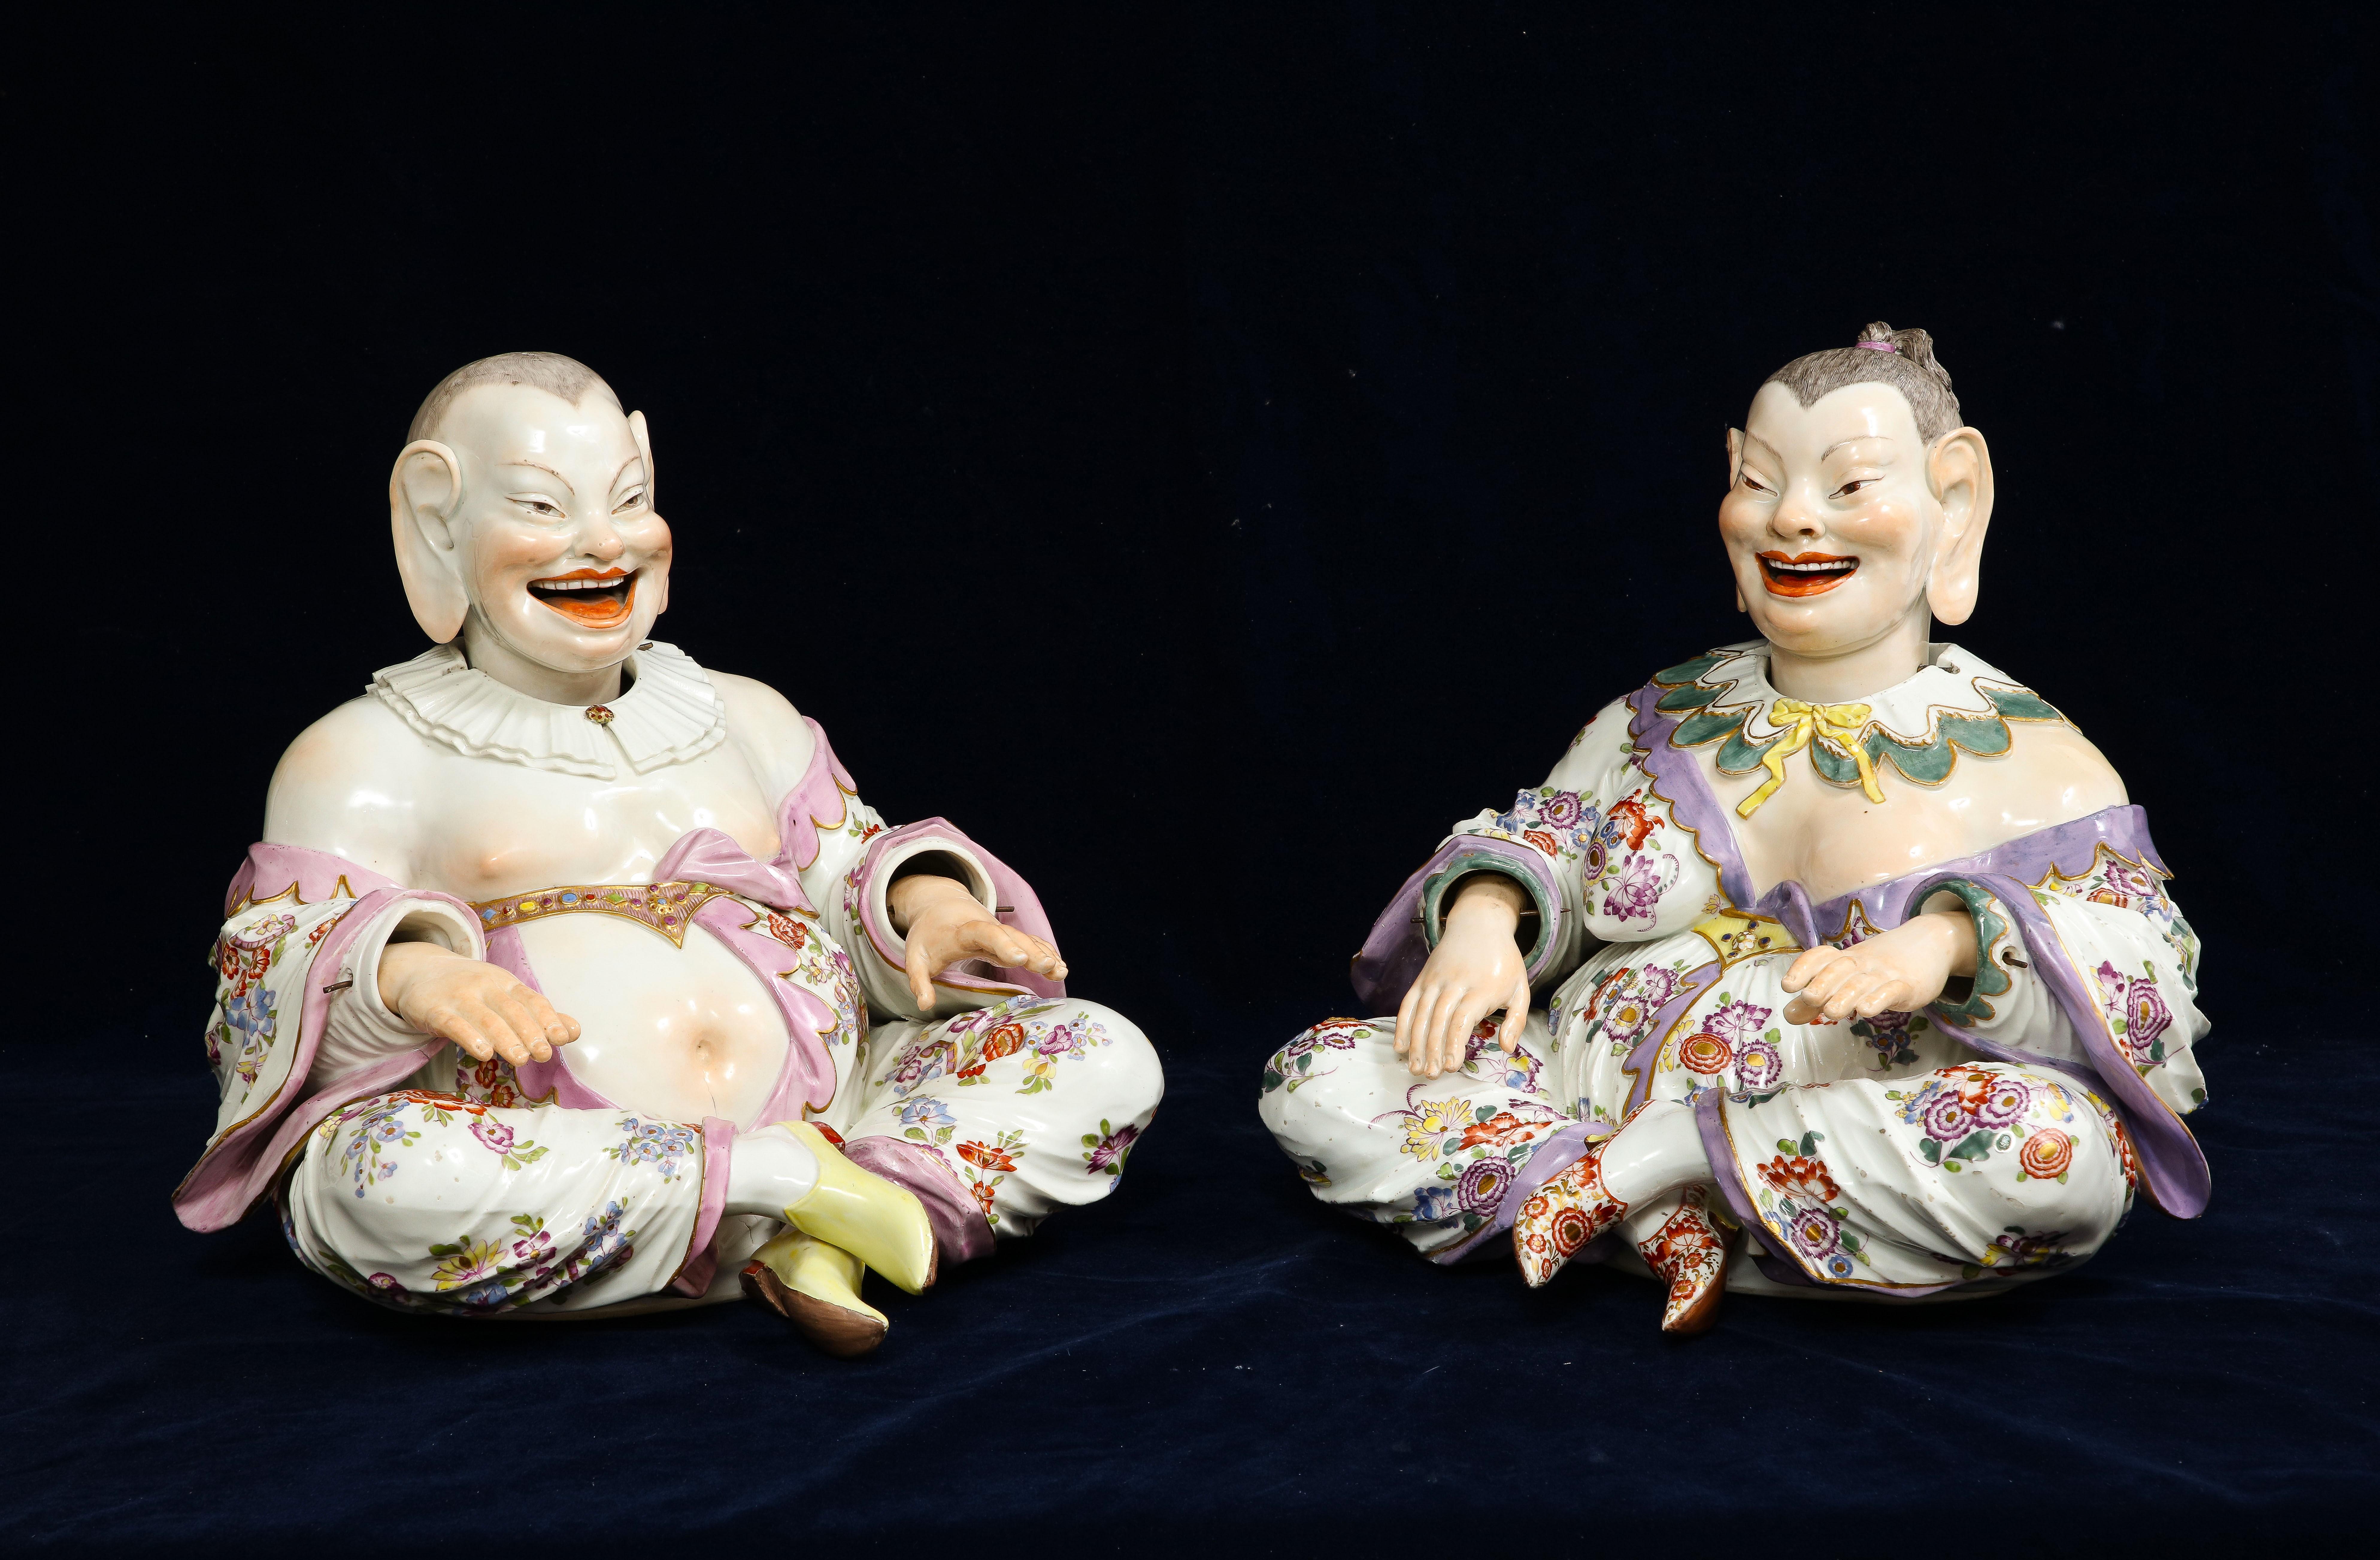 Une paire rare de figurines de style chinoiserie Meissen du 19ème siècle avec tête, main et langue mobiles, connues sous le nom de 